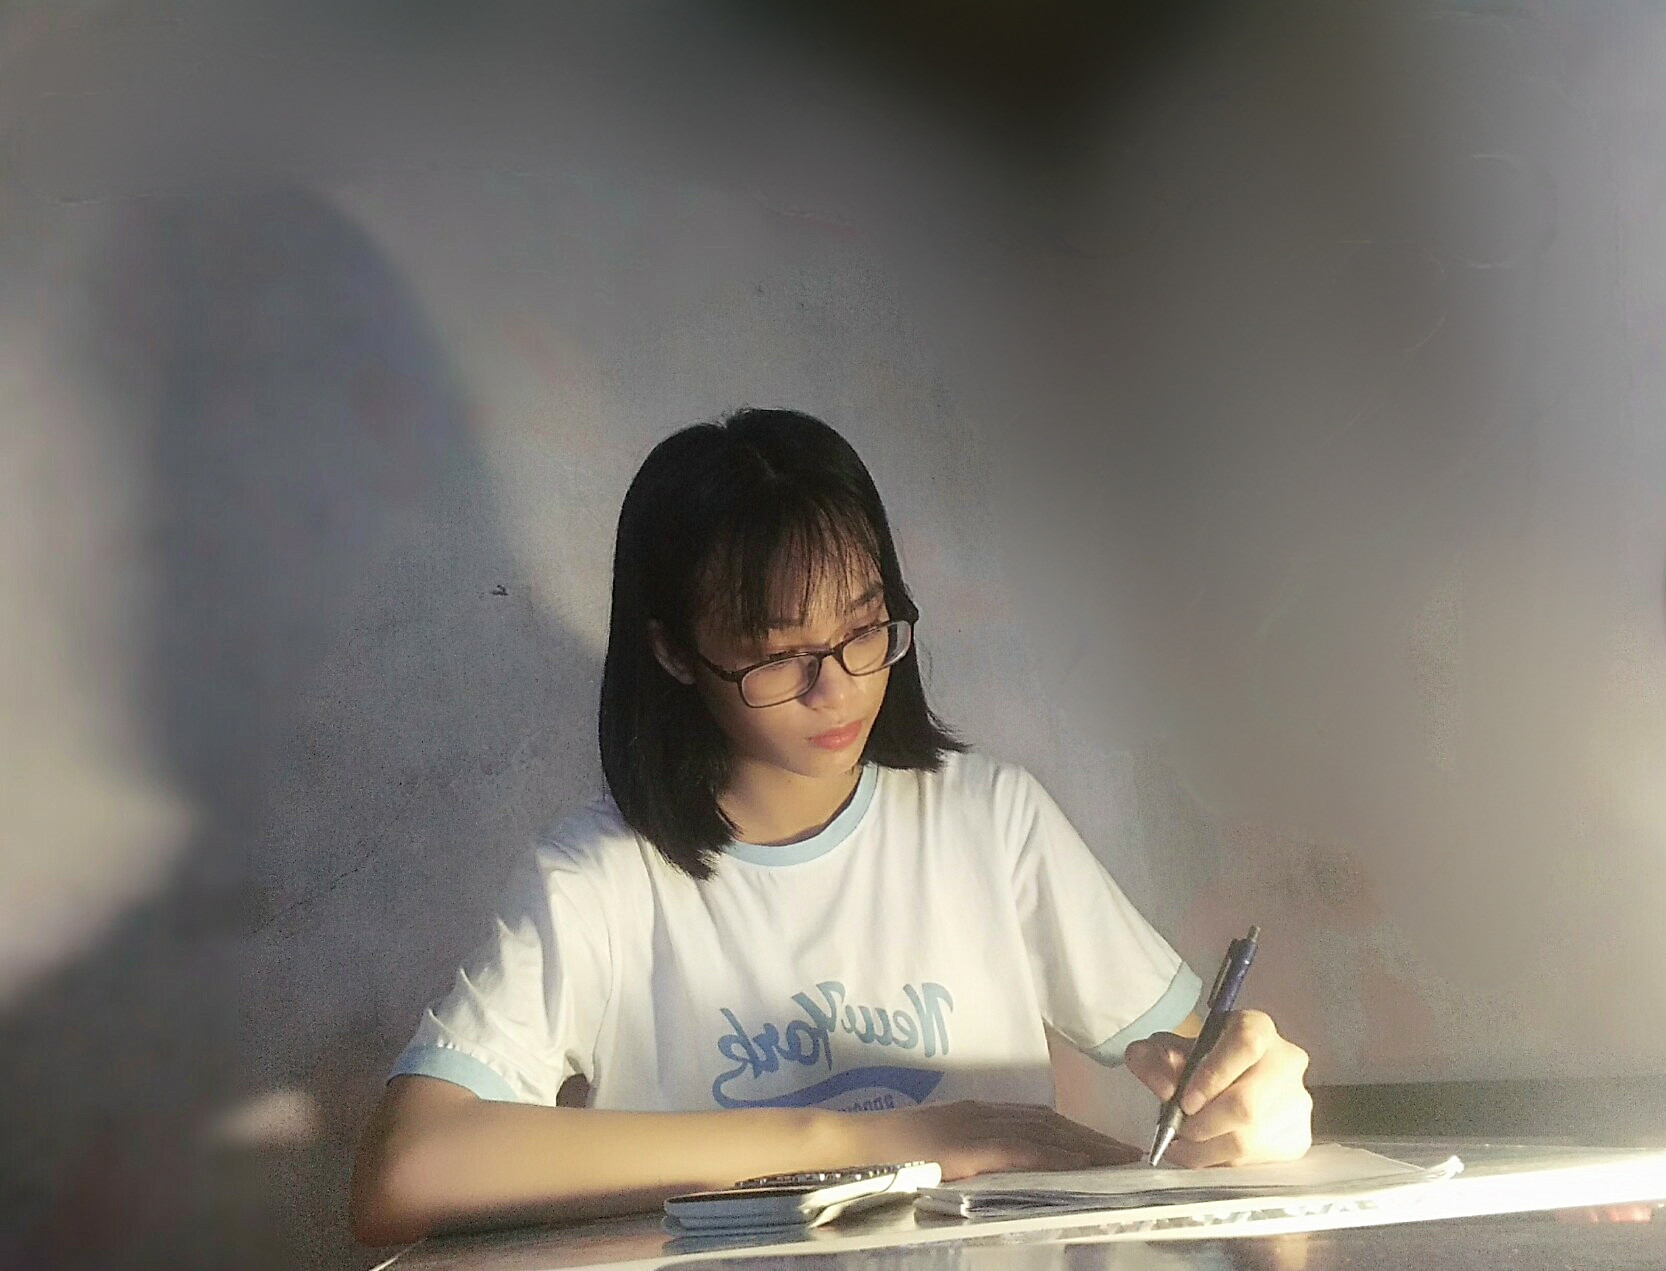 Phạm Như Quỳnh có niềm đam mê Toán học từ nhỏ và điểm 10 môn Toán trong kỳ thi tốt nghiệp THPT là thành quả ngọt ngào sau nhiều nỗ lực của cô học trò tỉnh lẻ. Ảnh: NVCC